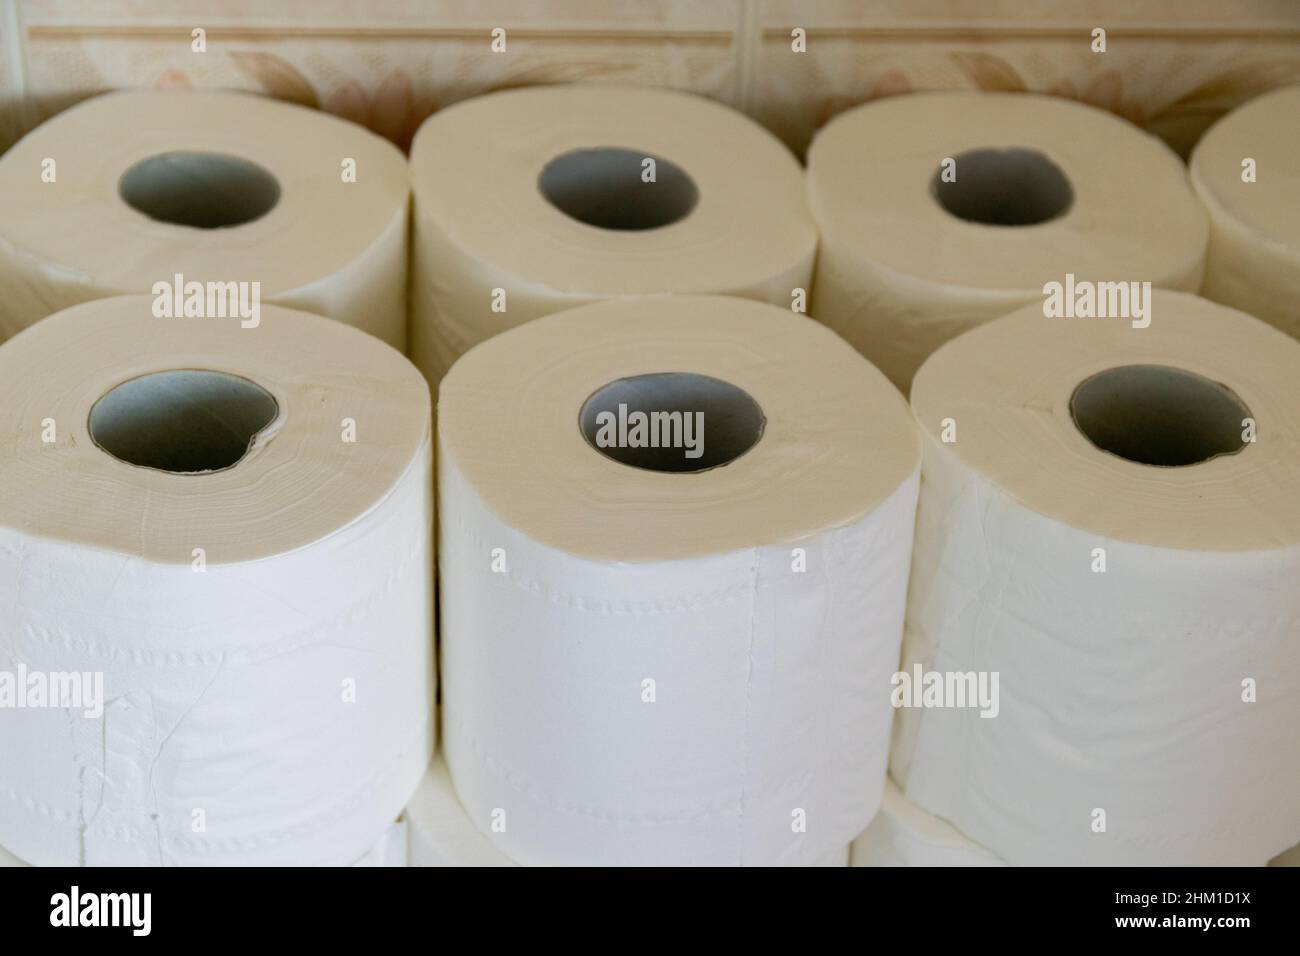 Toilettenpapiervorräte stapelten sich im heimischen Badezimmer. Panischer Kaufkonzept-Hintergrund. Verwischen Sie den flachen Fokus Stockfoto